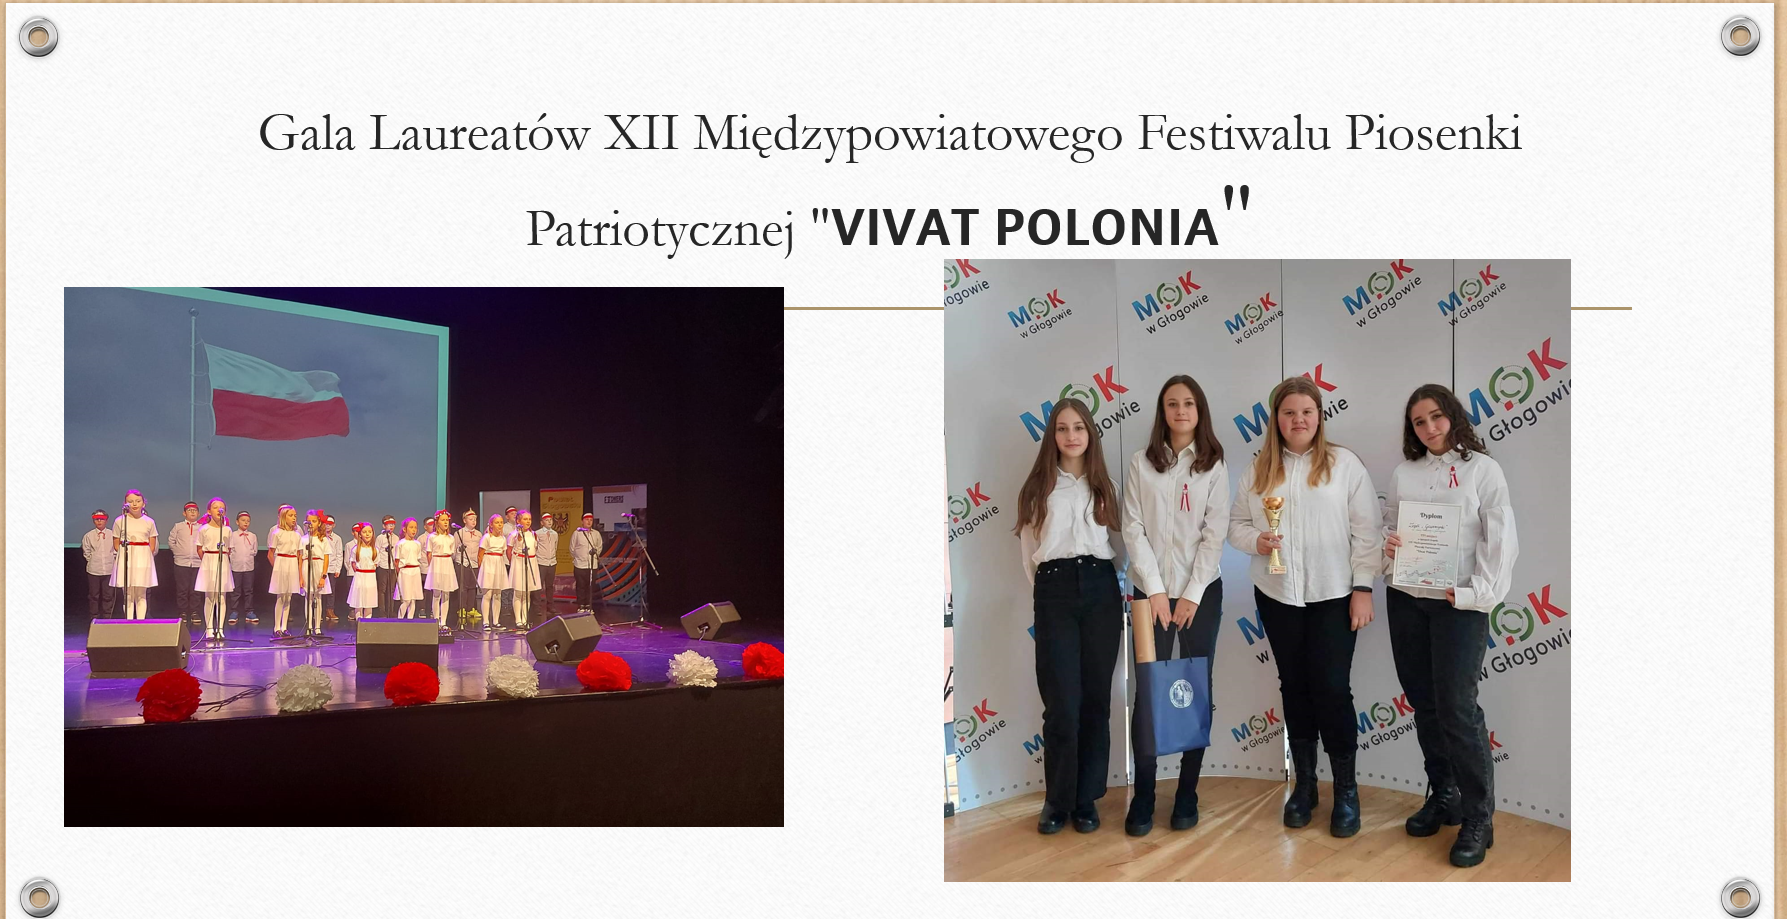 Gala Laureatów XII Międzypowiatowego Festiwalu Piosenki Patriotycznej "𝗩𝗜𝗩𝗔𝗧 𝗣𝗢𝗟𝗢𝗡𝗜𝗔"